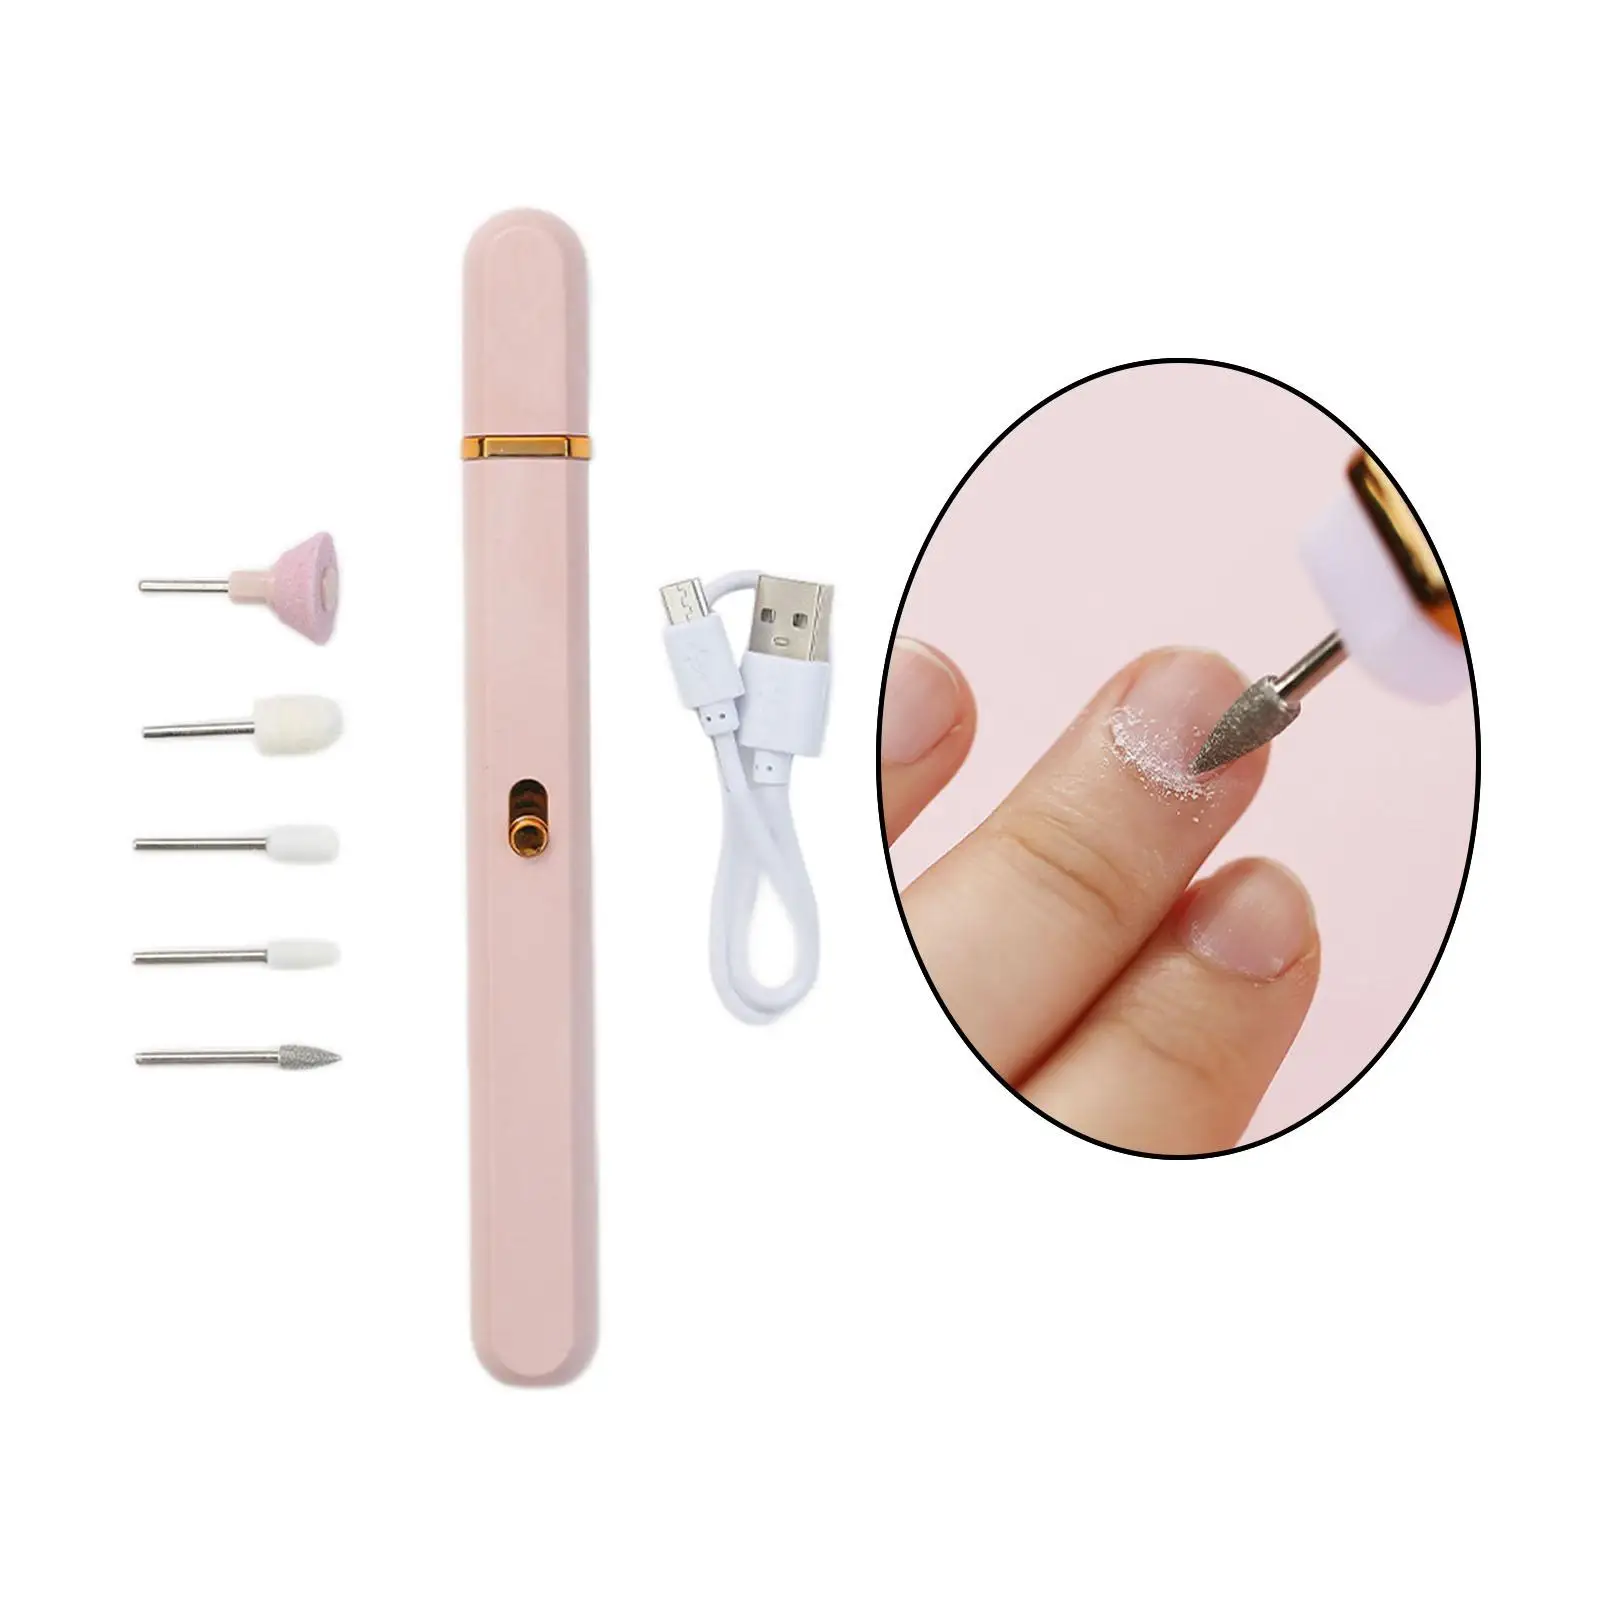 Mini Electric Nail Drill Set Fingernail Grinder Kit Nail Polisher for Reshape Remove Gel Nails